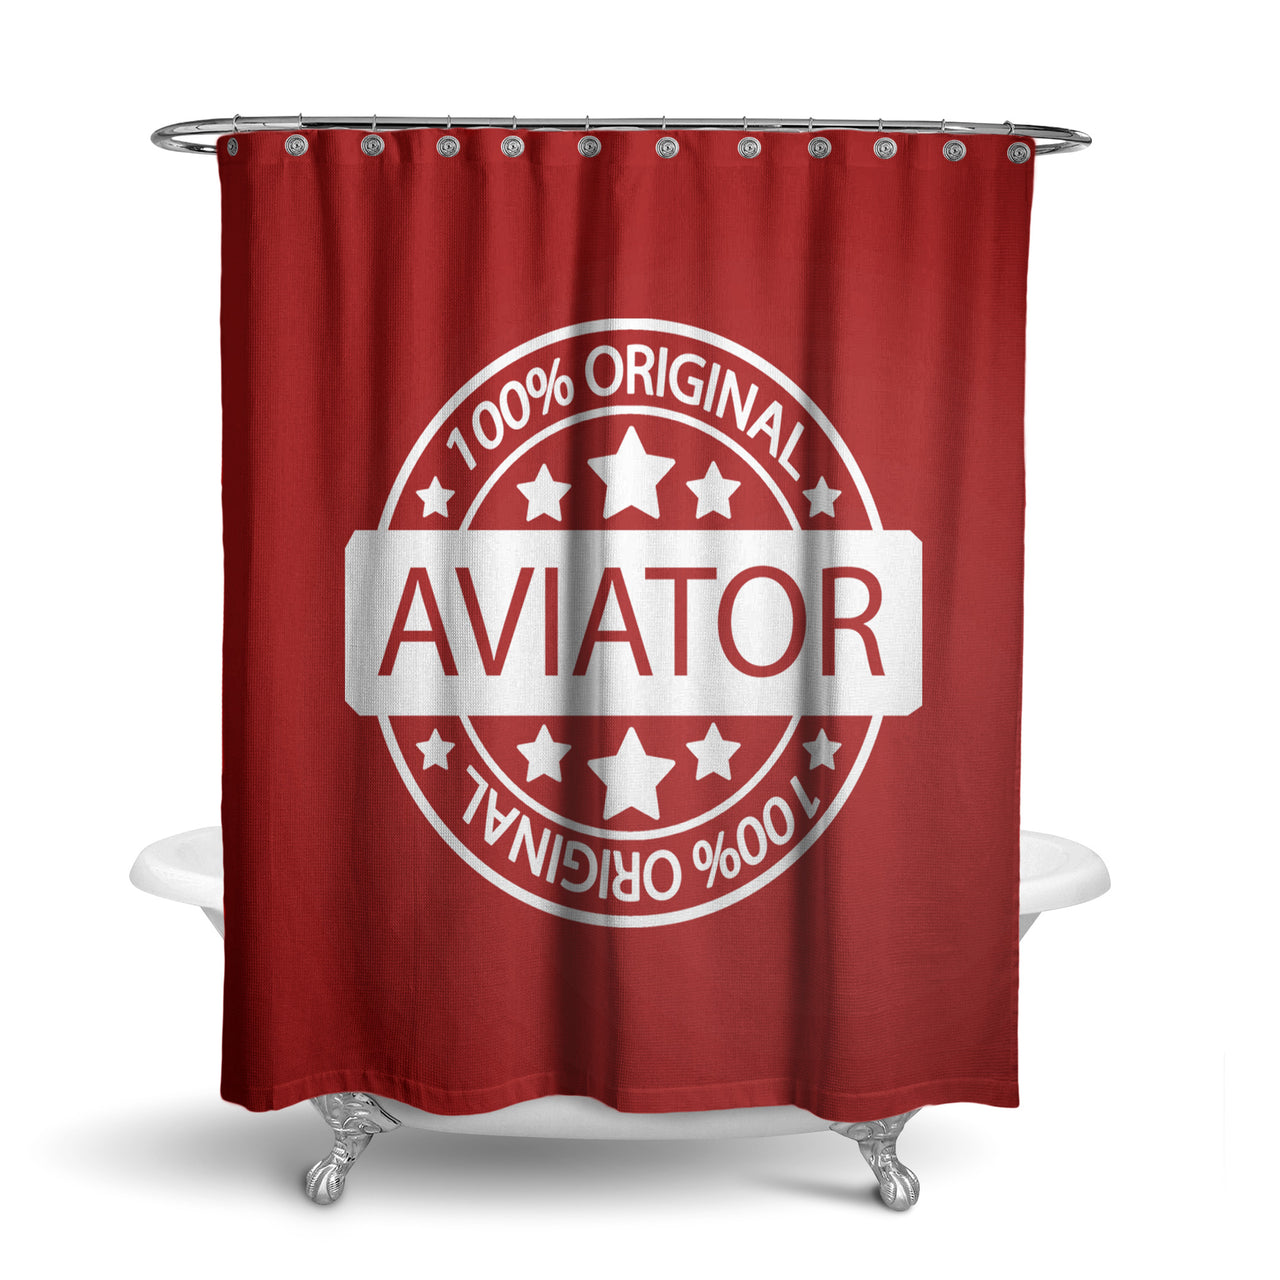 100 Original Aviator Designed Shower Curtains